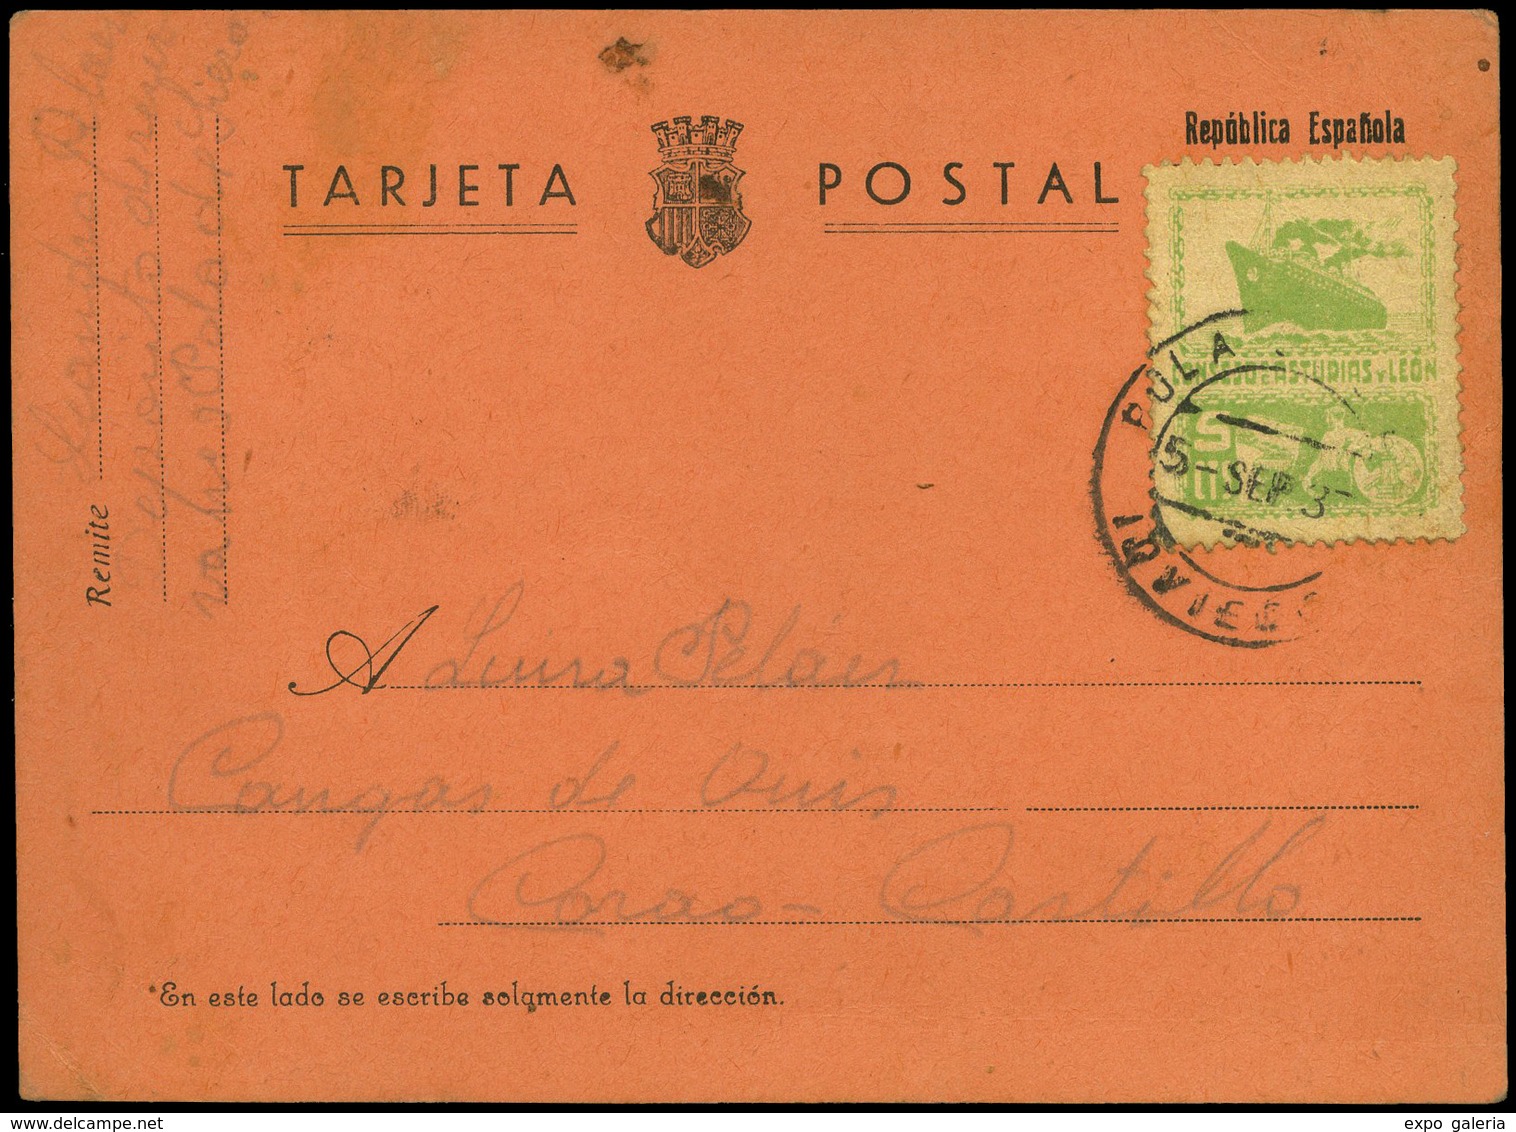 773 Ed. TP 5 - 1937. Tarjeta Postal Cda Desde Pola De Siero 05/09/37 A Corao. Lujo. Rara. Ex Gomez-Guillamón - Asturias & Leon